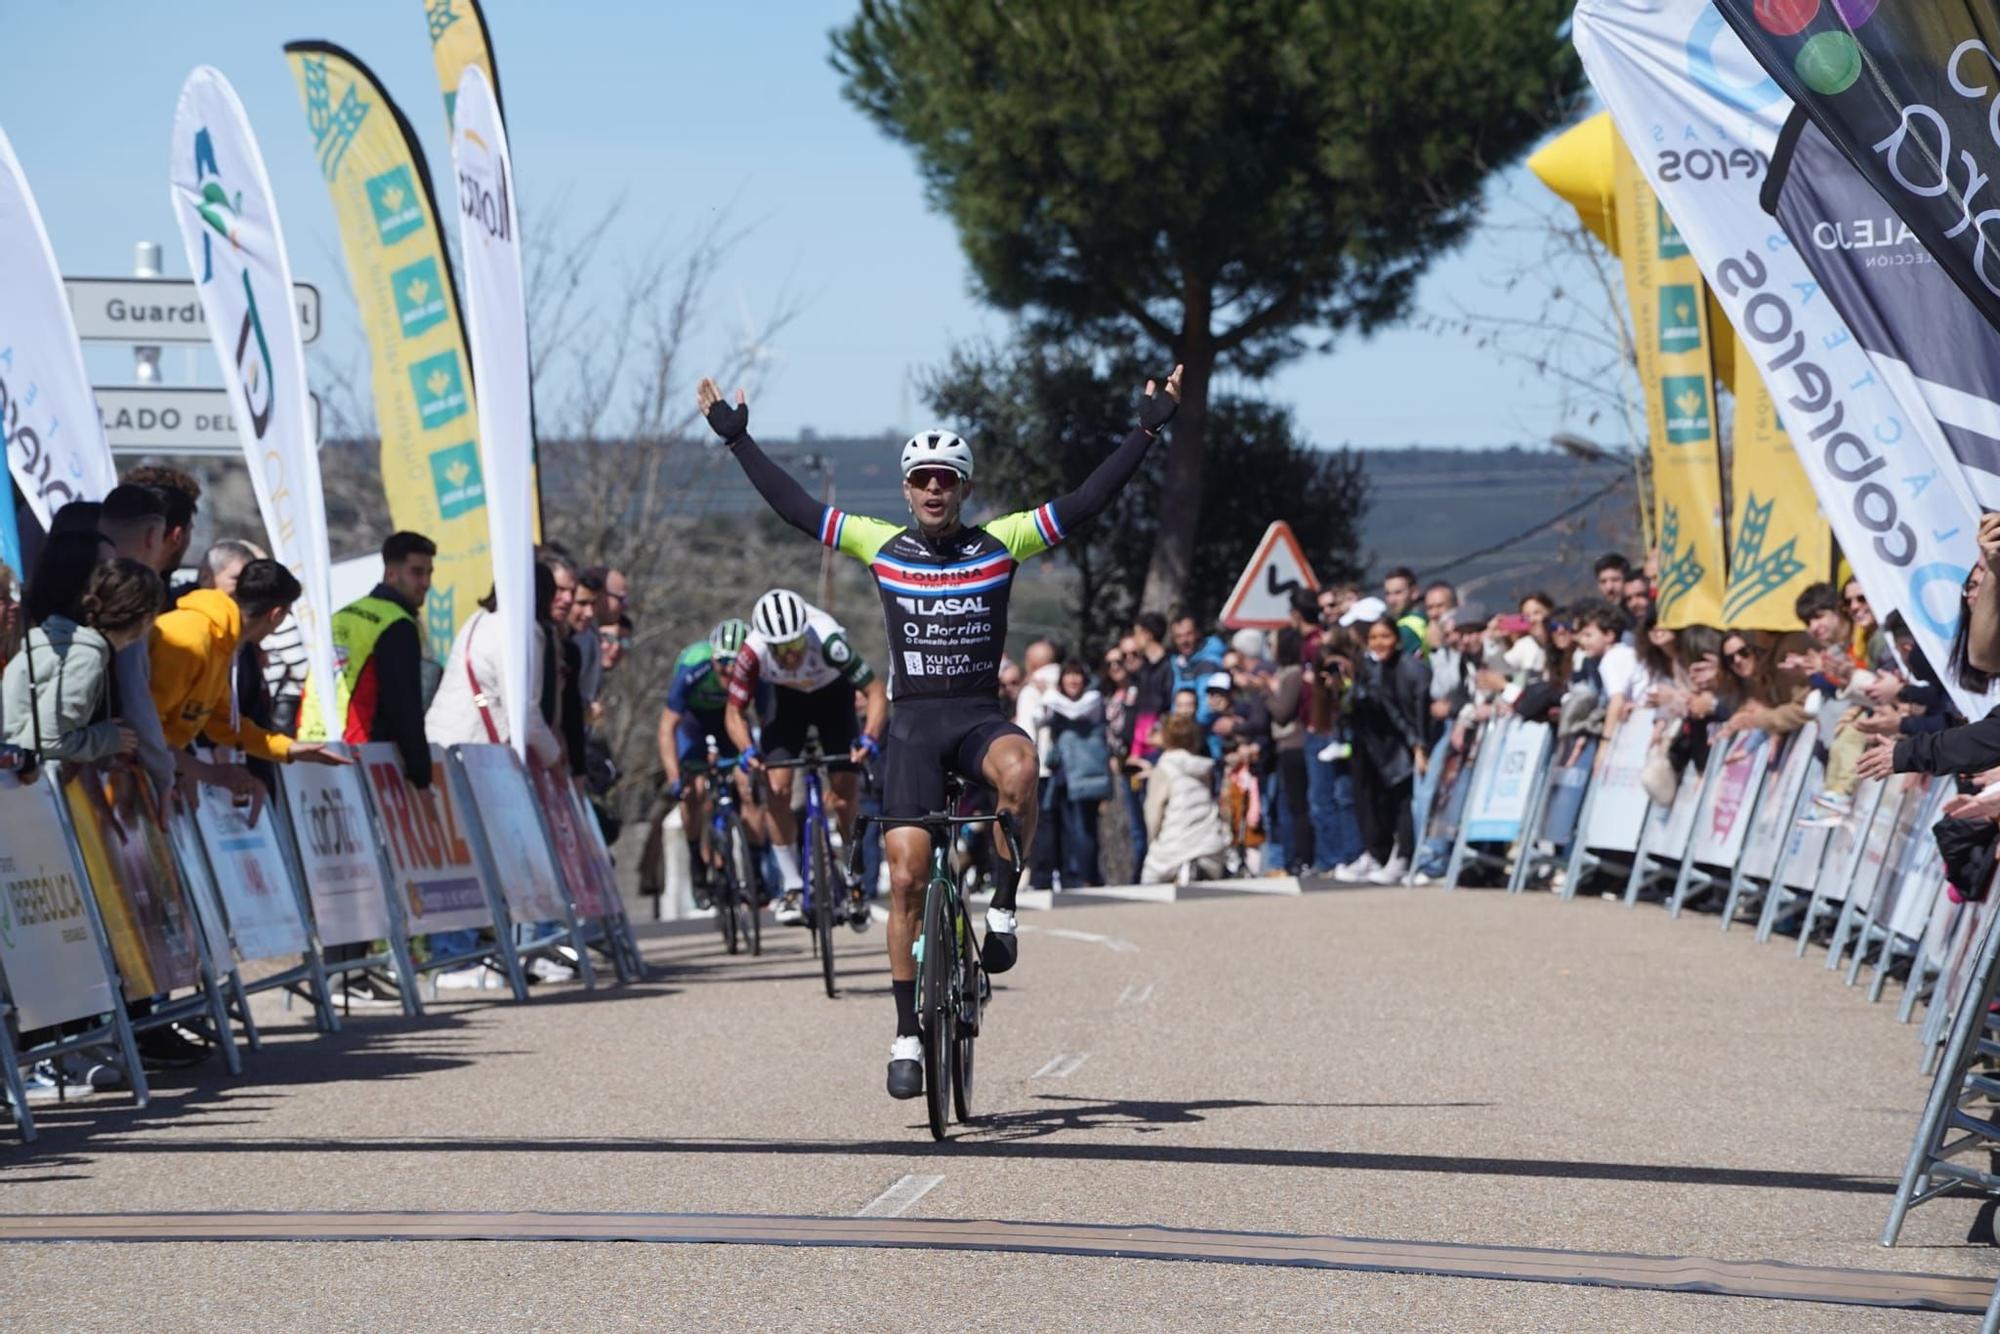 GALERÍA | Jason Huertas gana el trofeo "San José" de ciclismo de Zamora